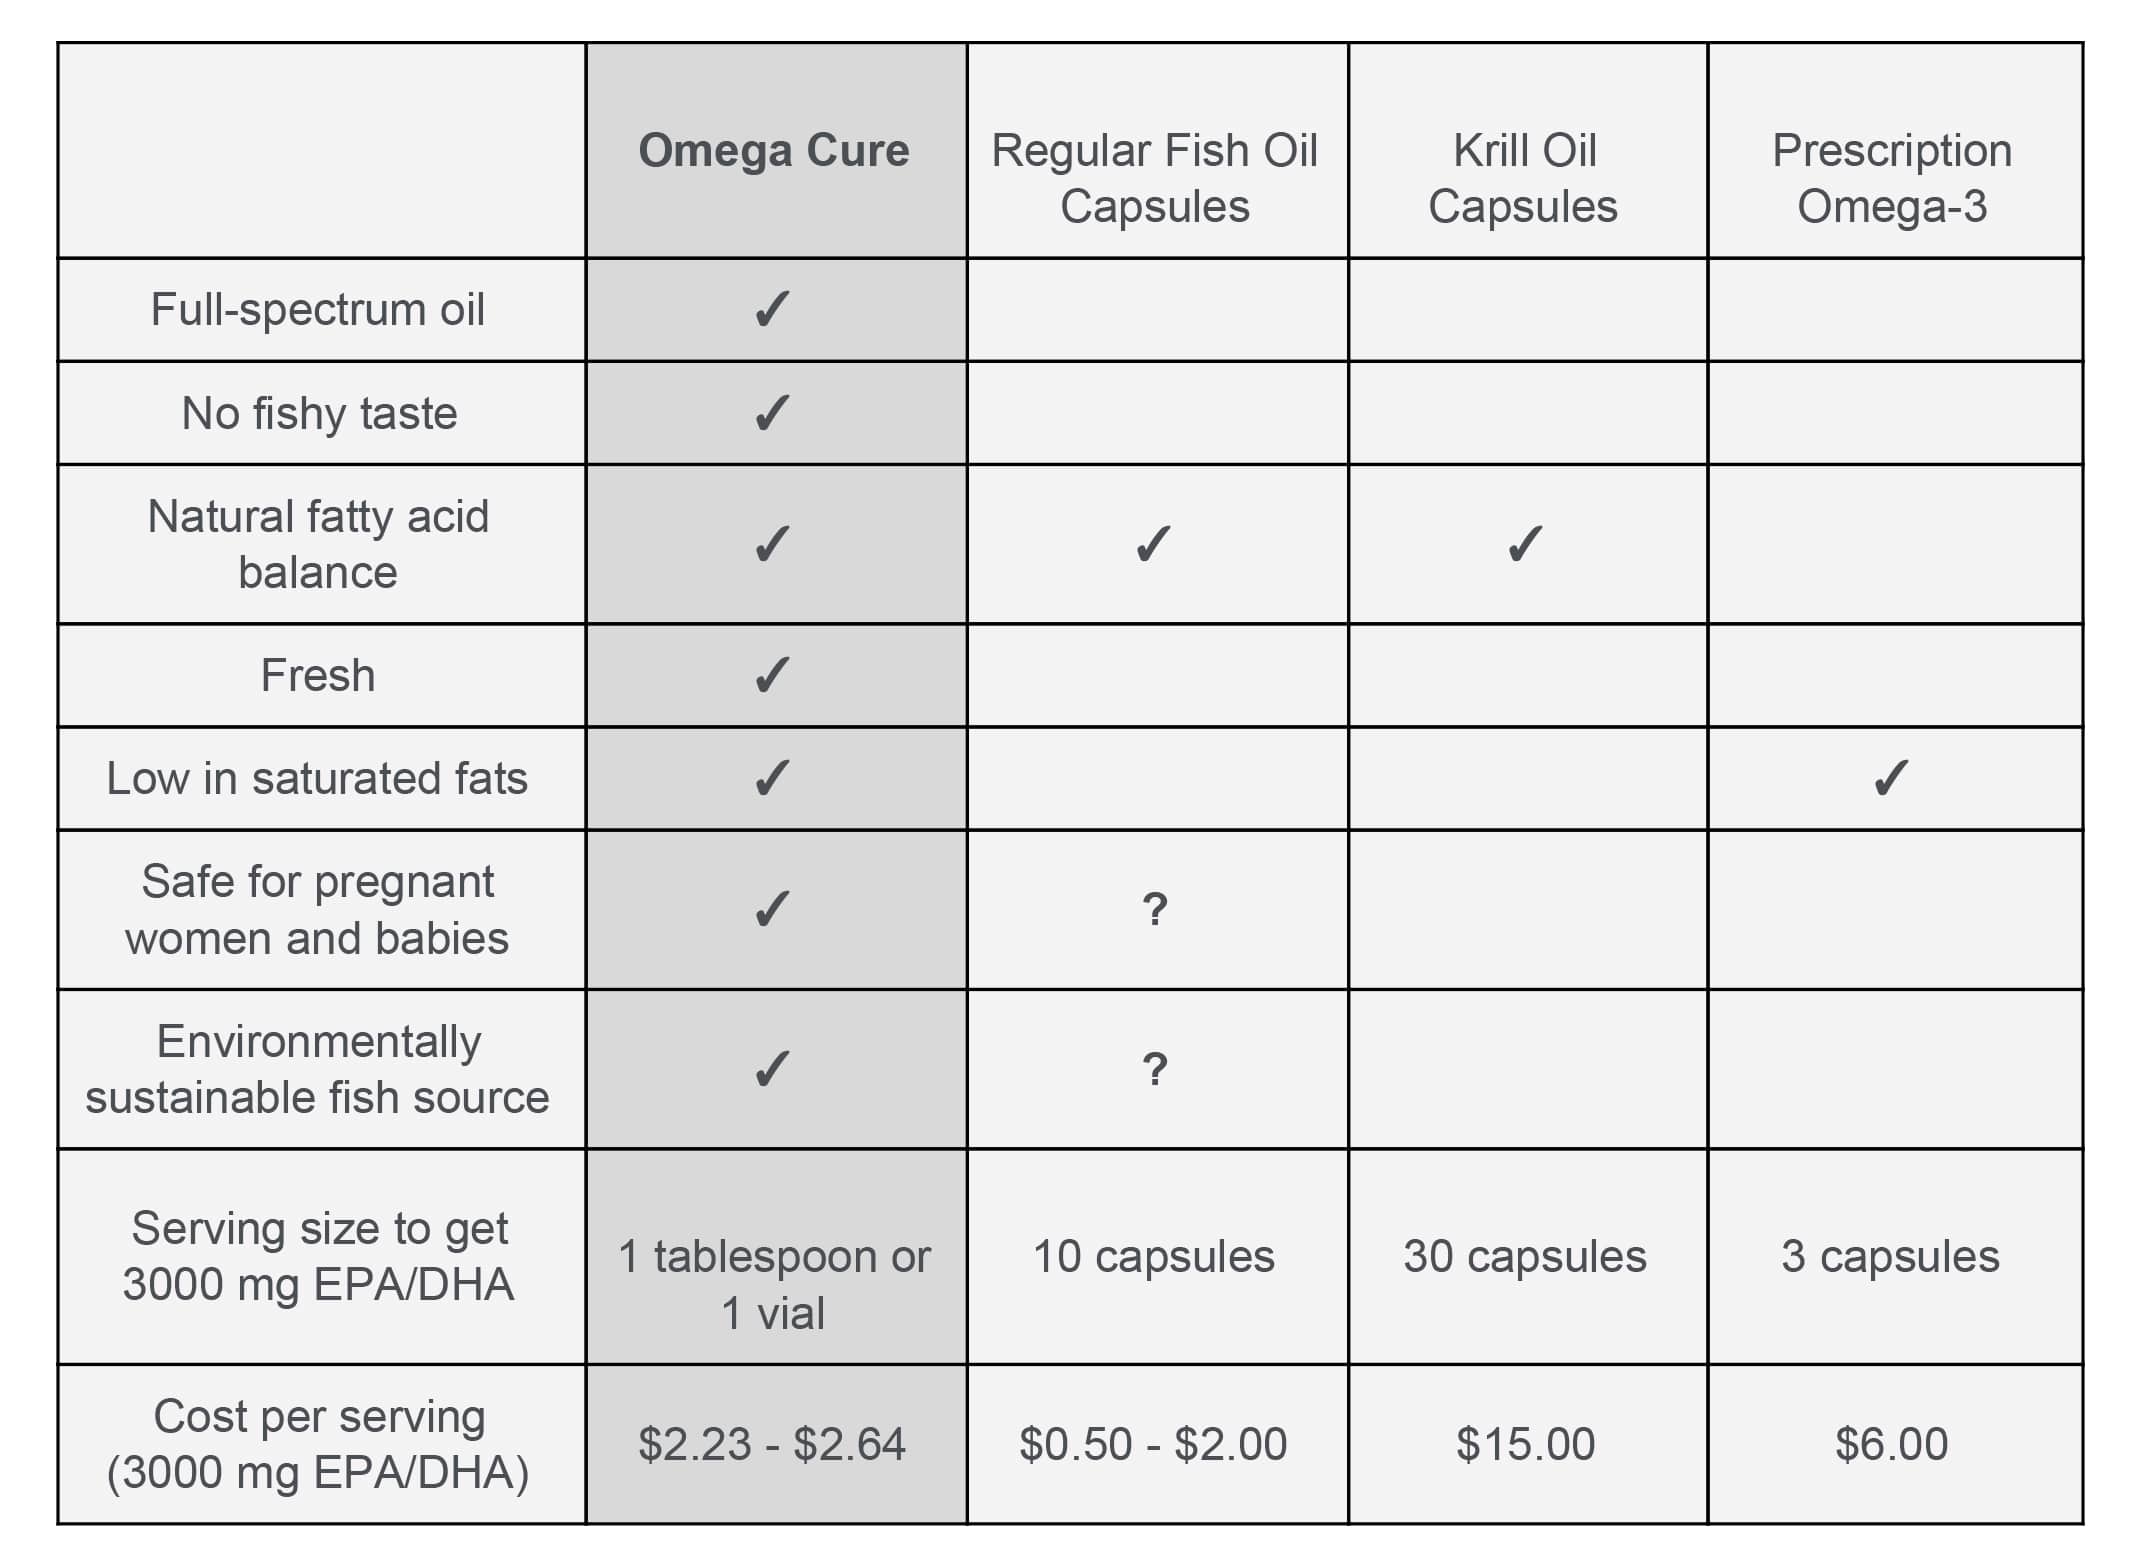 omega-3 cure comparison chart fresh fish cod liver oil